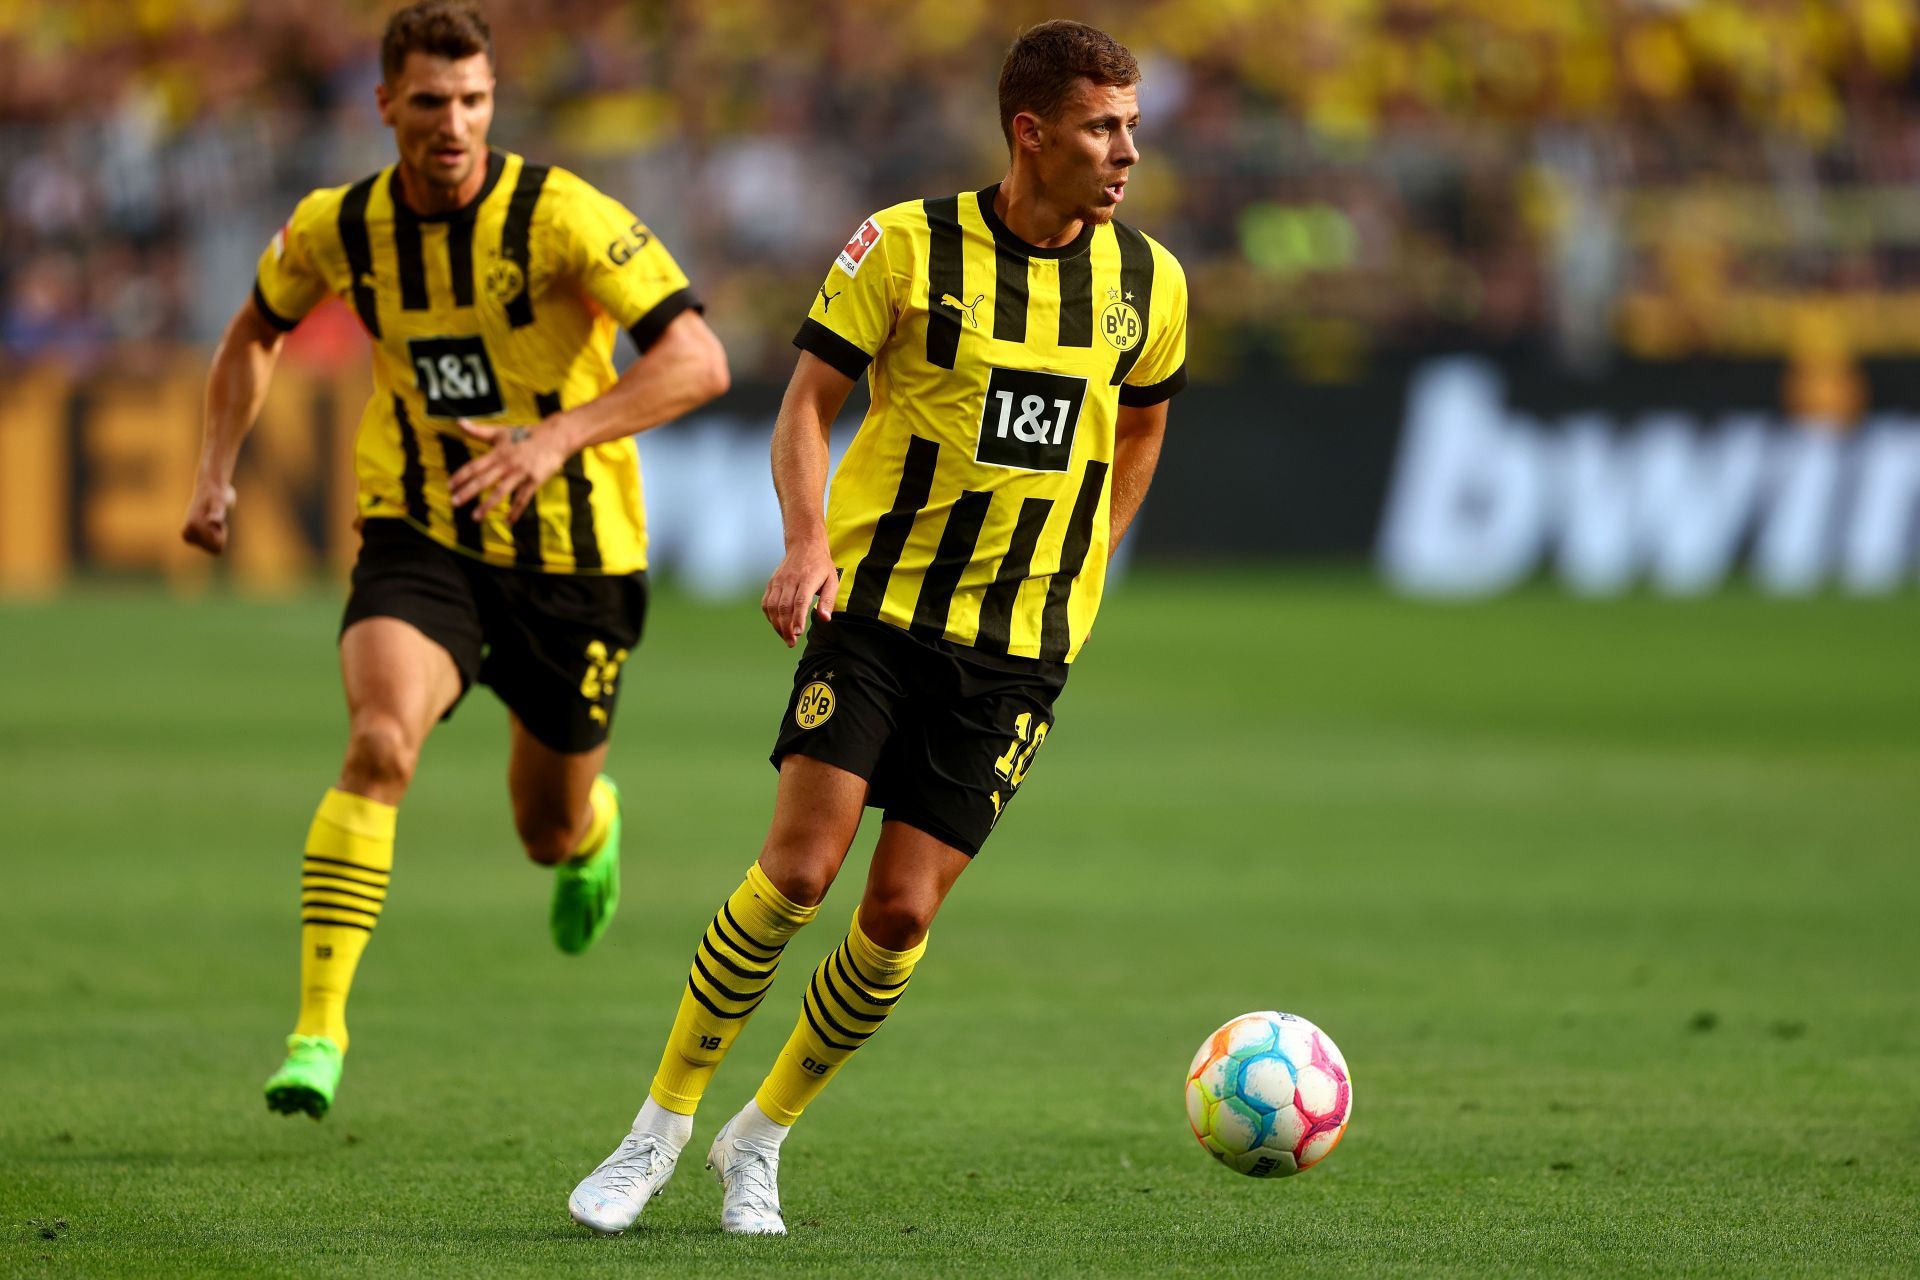 Borussia Dortmund take on SC Freiburg this week